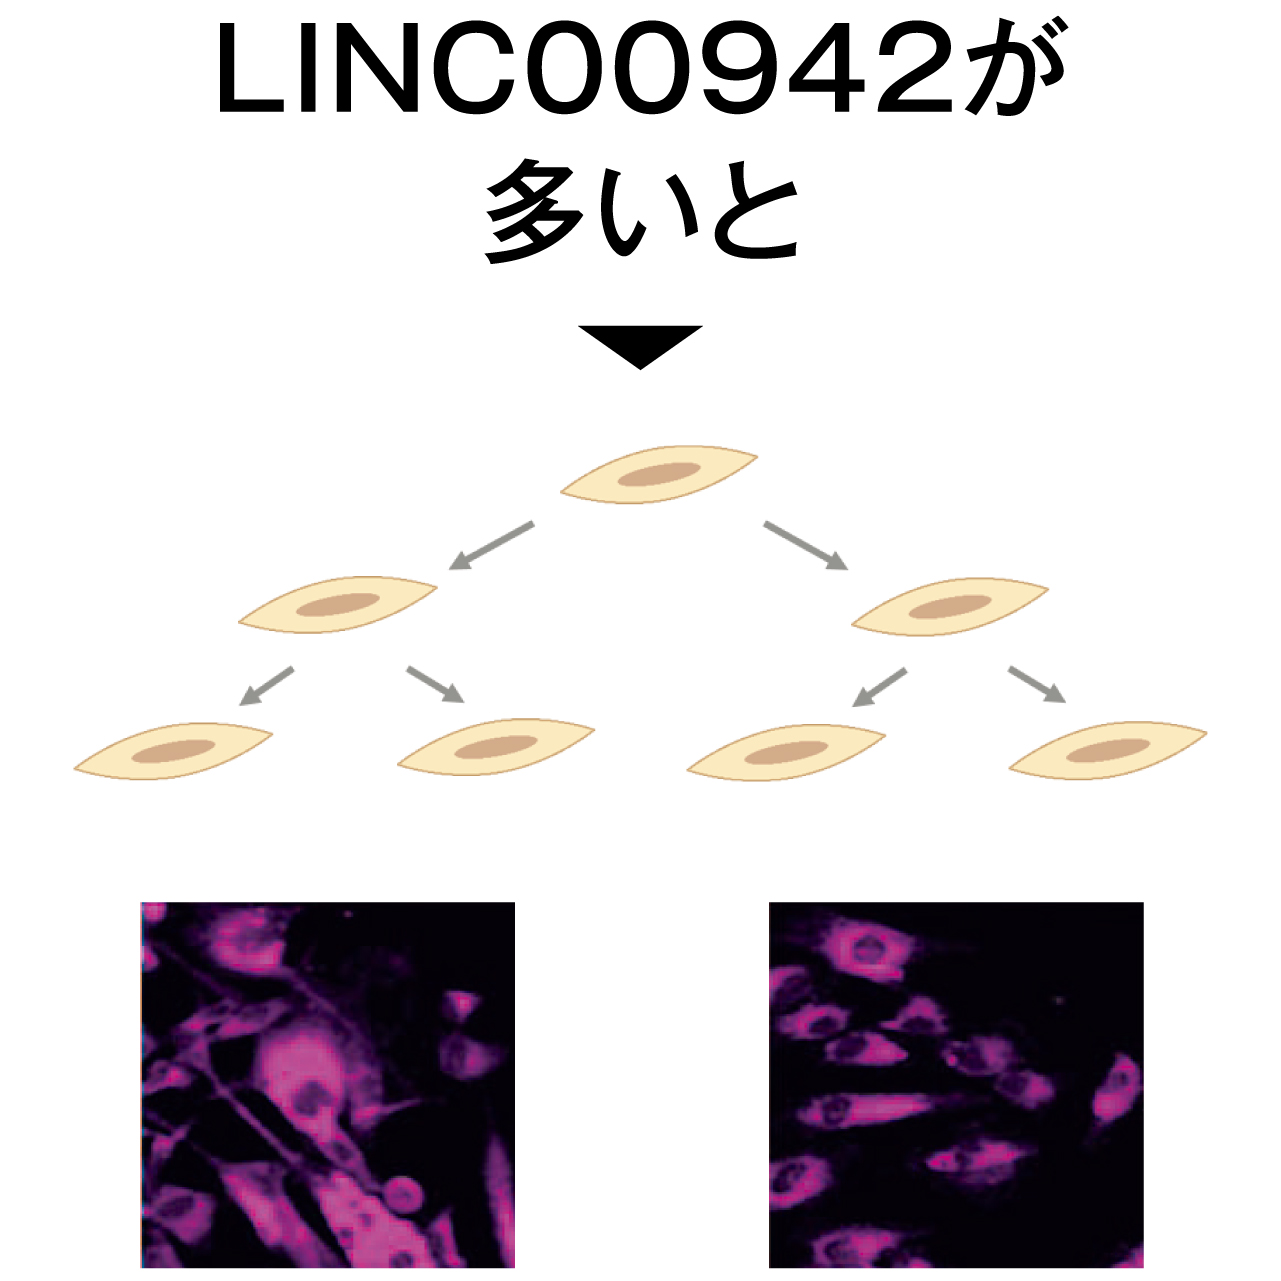 LINC00942が多い状態で、エイジレス細胞が増える様子